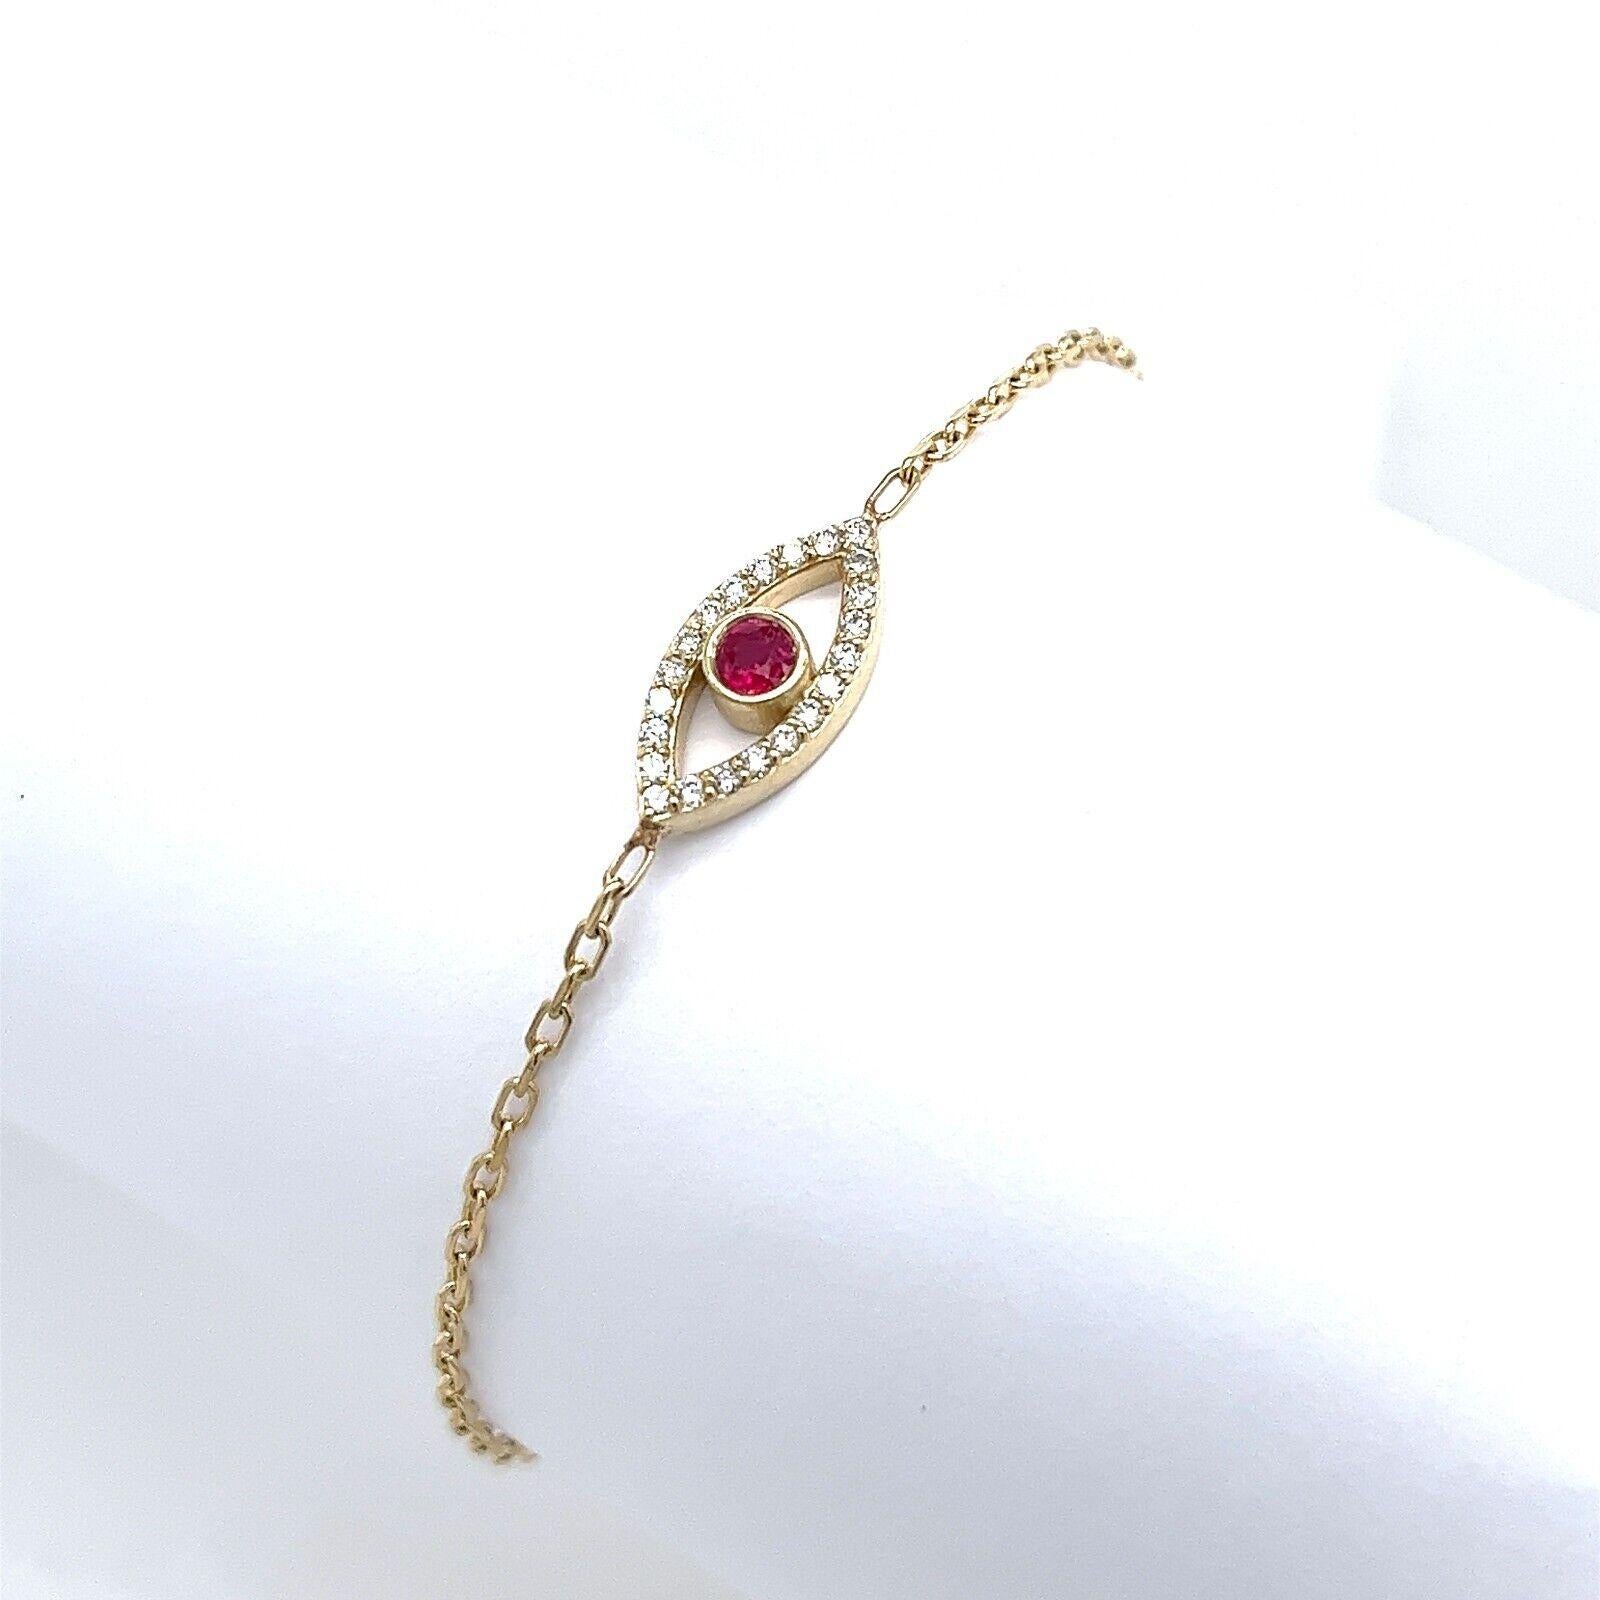 Made by Jewellery Cave - unser exquisites Armband mit Diamanten und Rubinen als böses Auge - eine bezaubernde Verschmelzung von Stil und Symbolik. Dieses modische Accessoire aus 9 Karat Gelbgold verkörpert Eleganz und Spiritualität. Das Herzstück